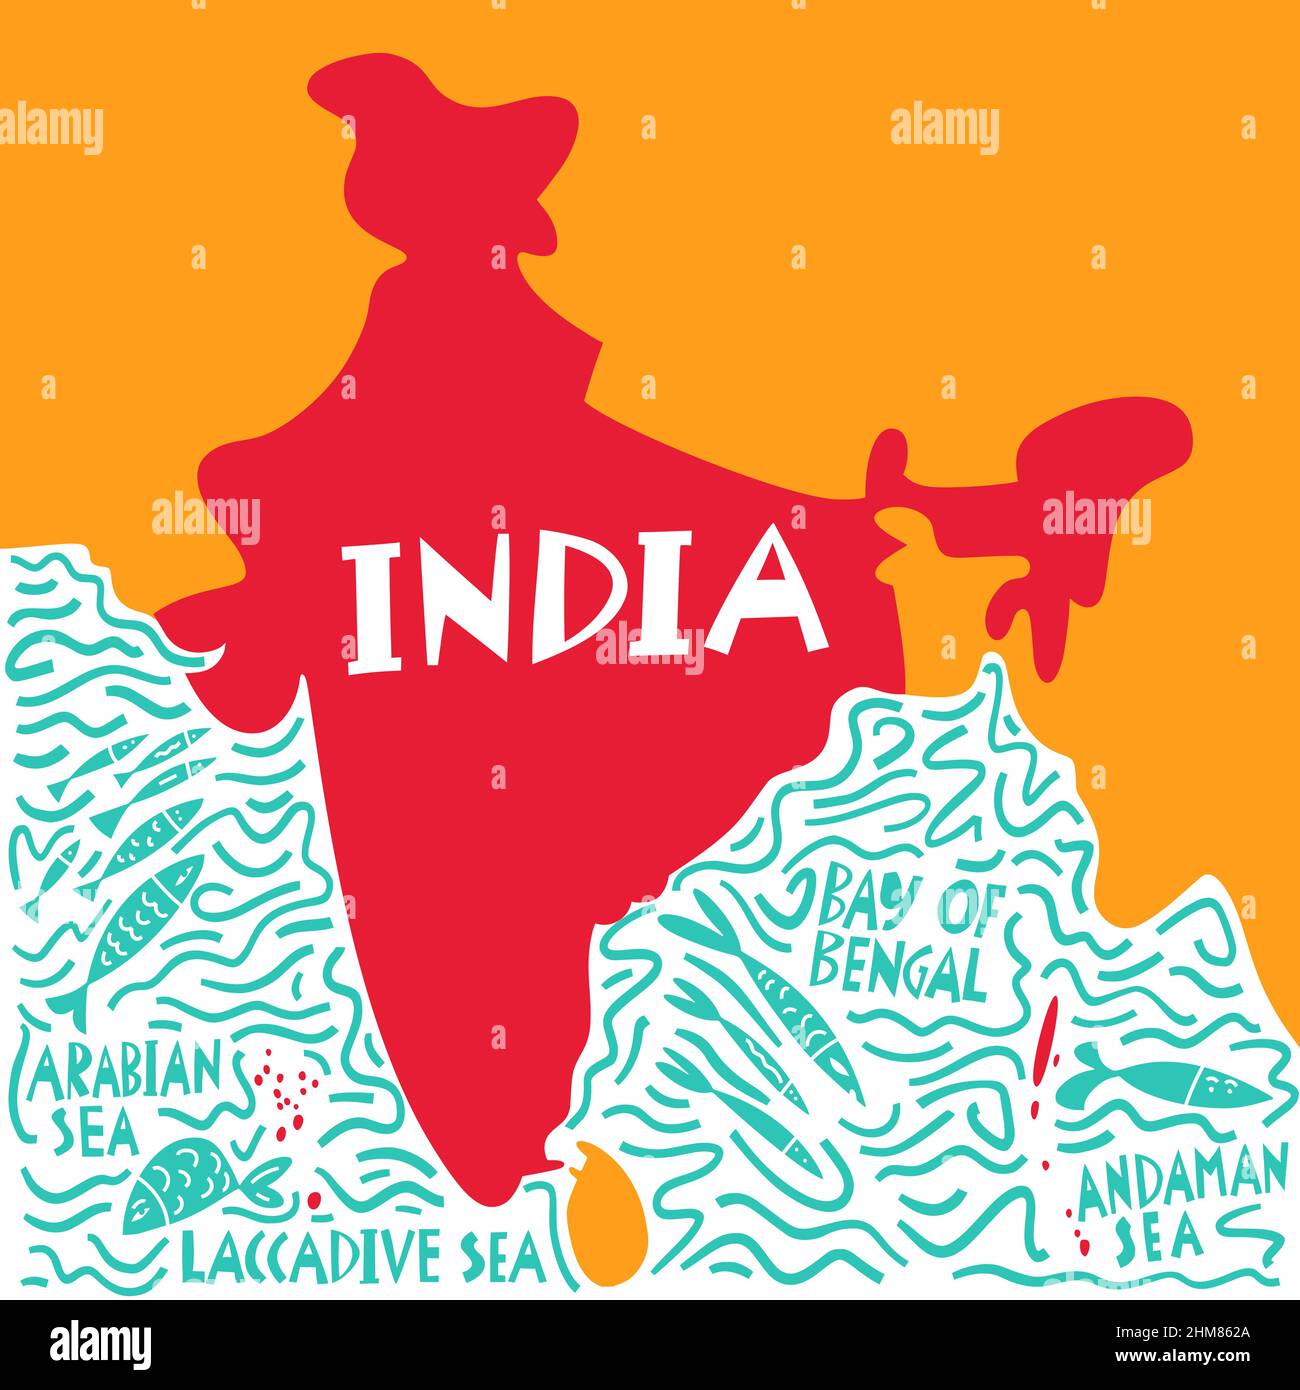 Vektor Hand gezeichnete stilisierte Karte der indischen Region mit Wasser Namen. Reiseabbildung. Darstellung der Geographie der Republik Indien. Asien-Kartenelement Stock Vektor